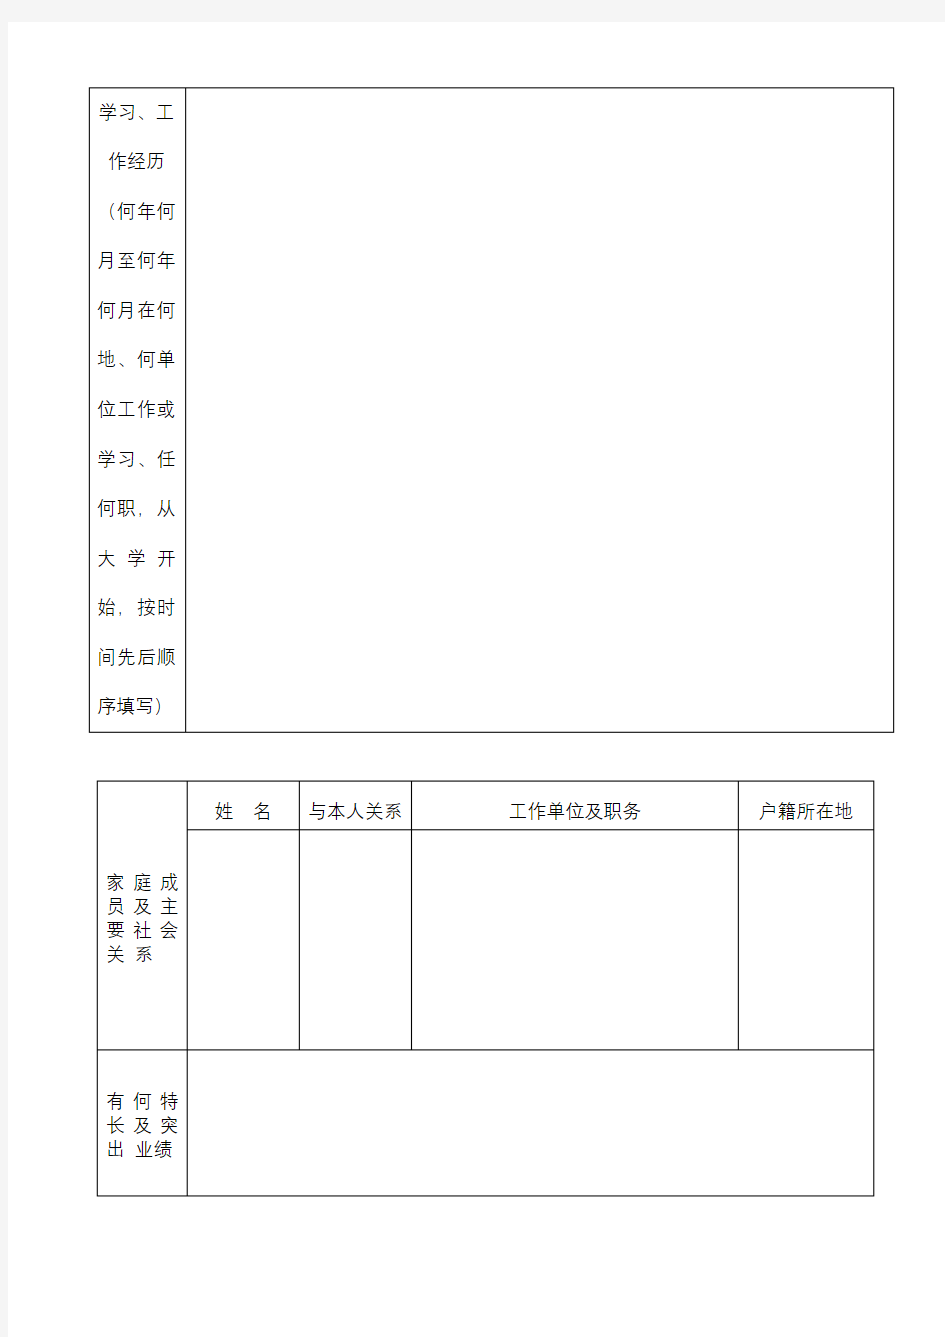 2018年清溪镇环保分局招录聘员报名表【模板】